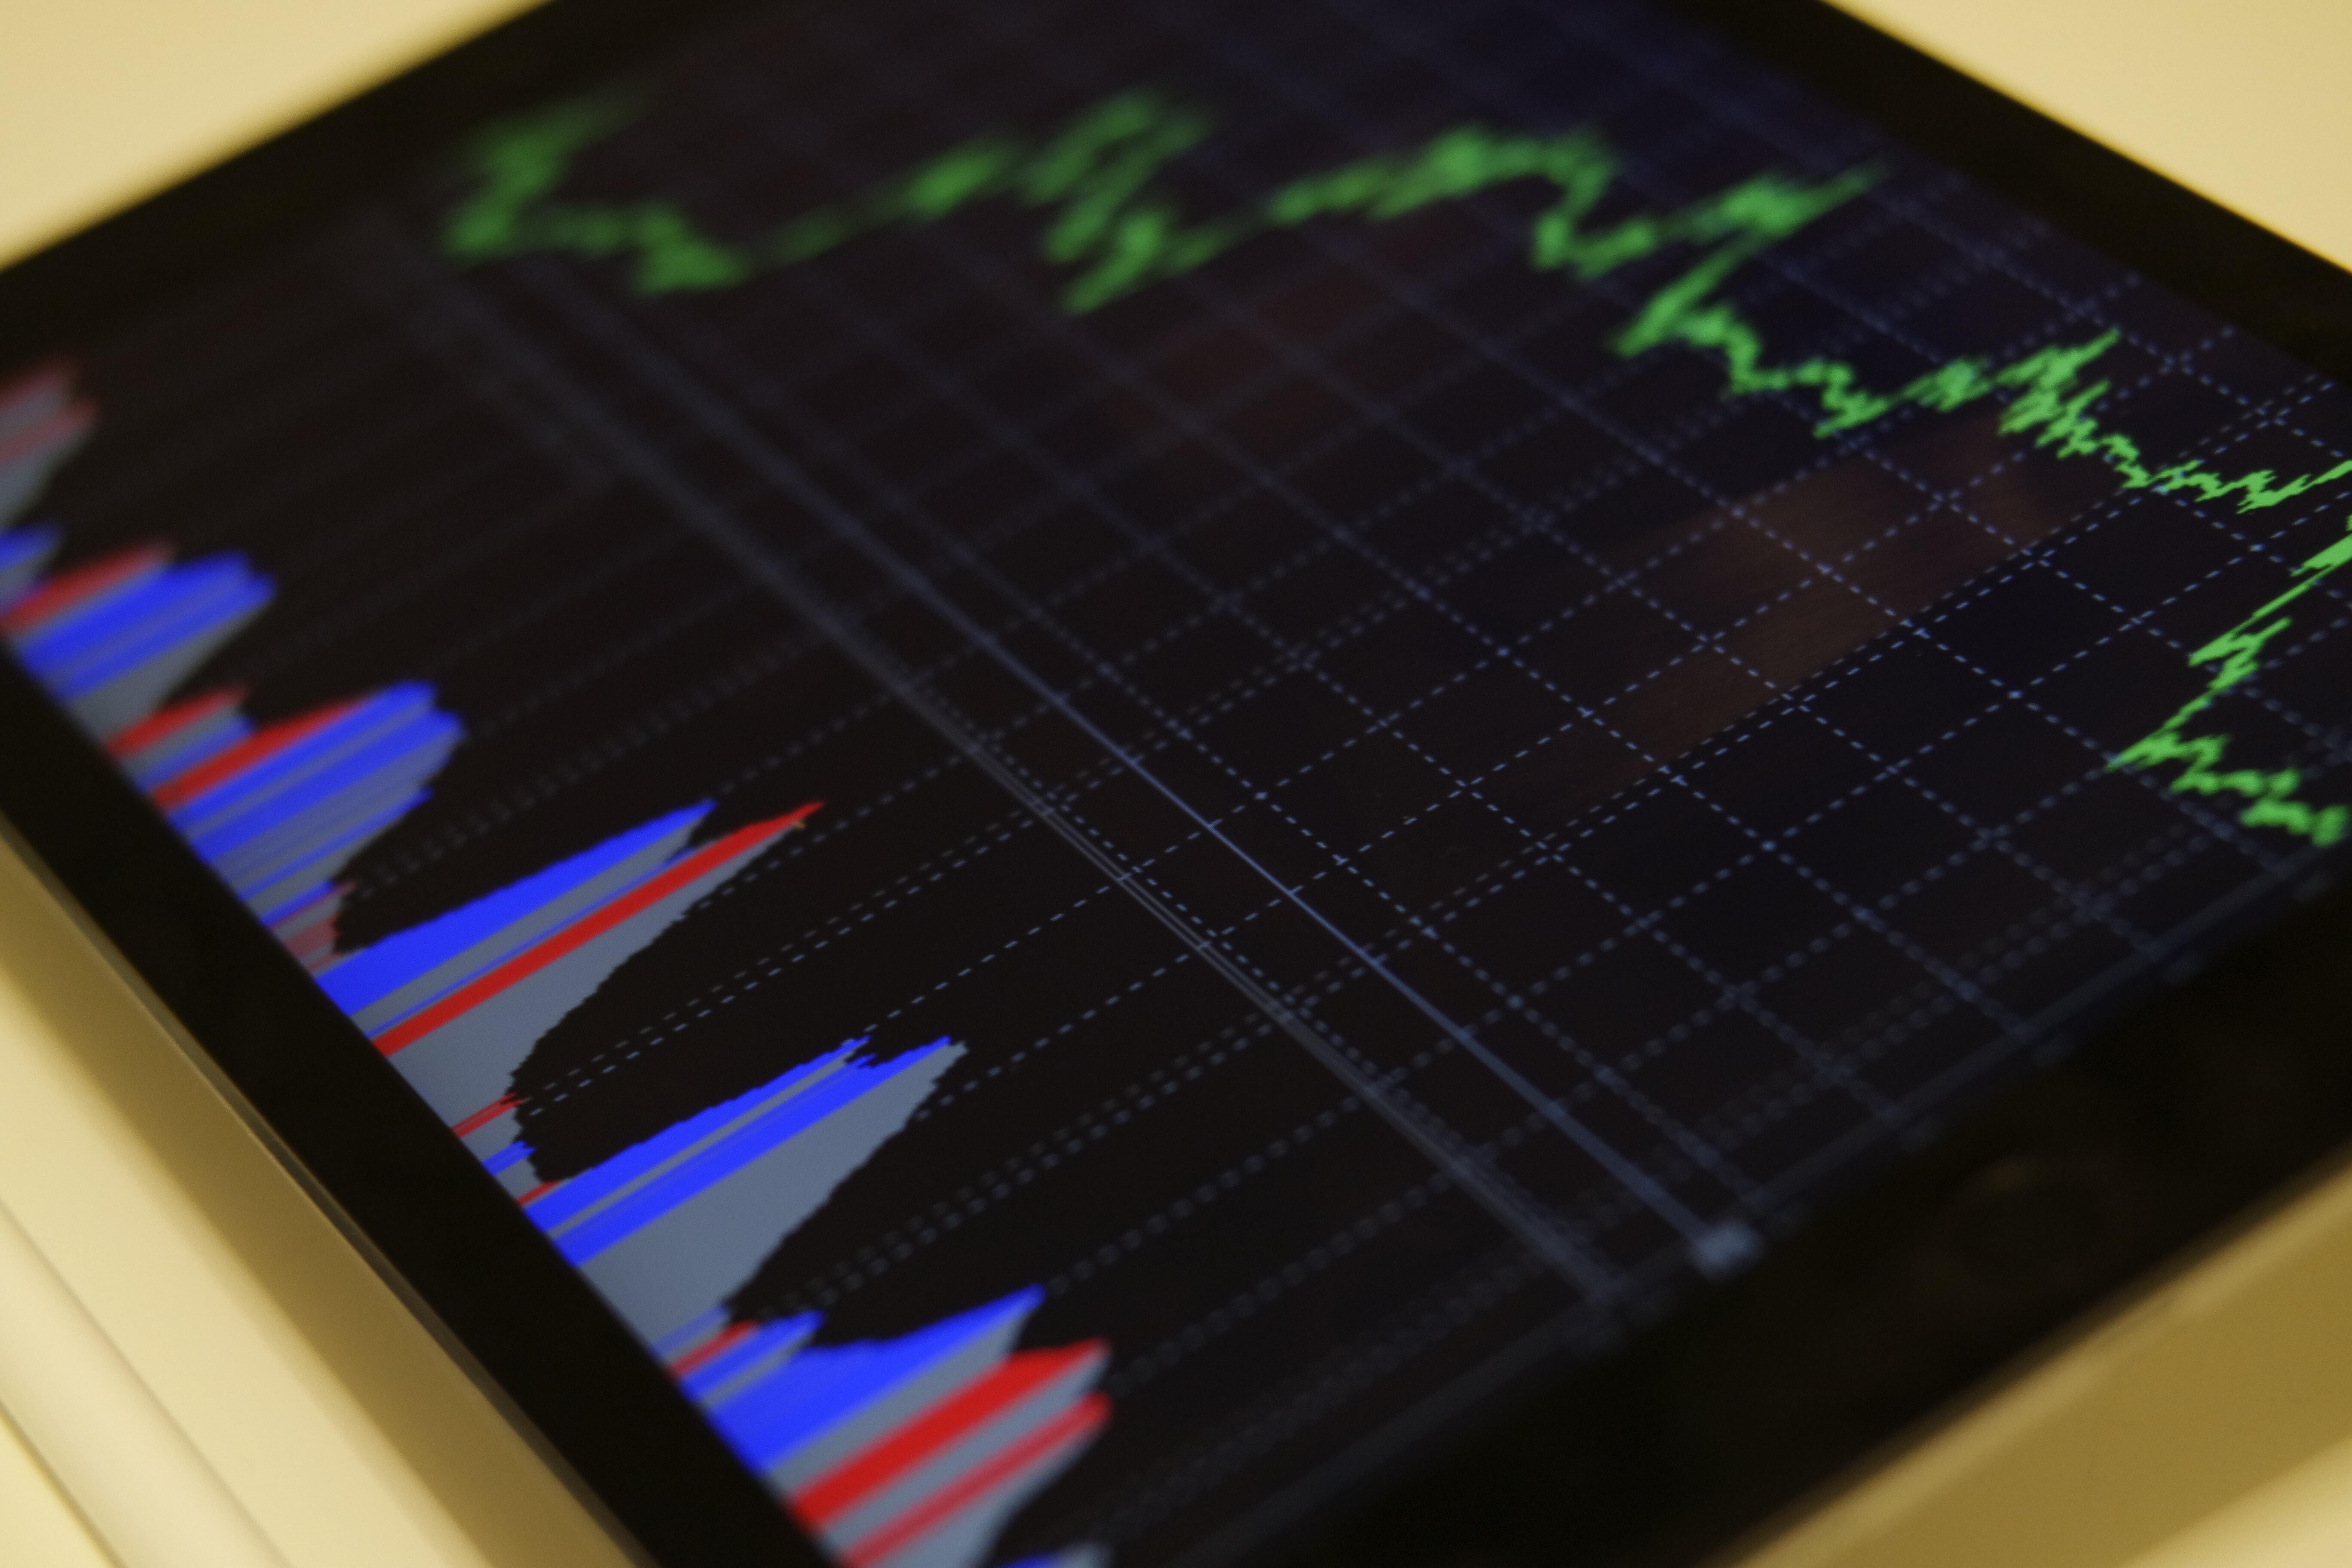 Aplikasi trading menyediakan fitur menganalisis pergerakan harga